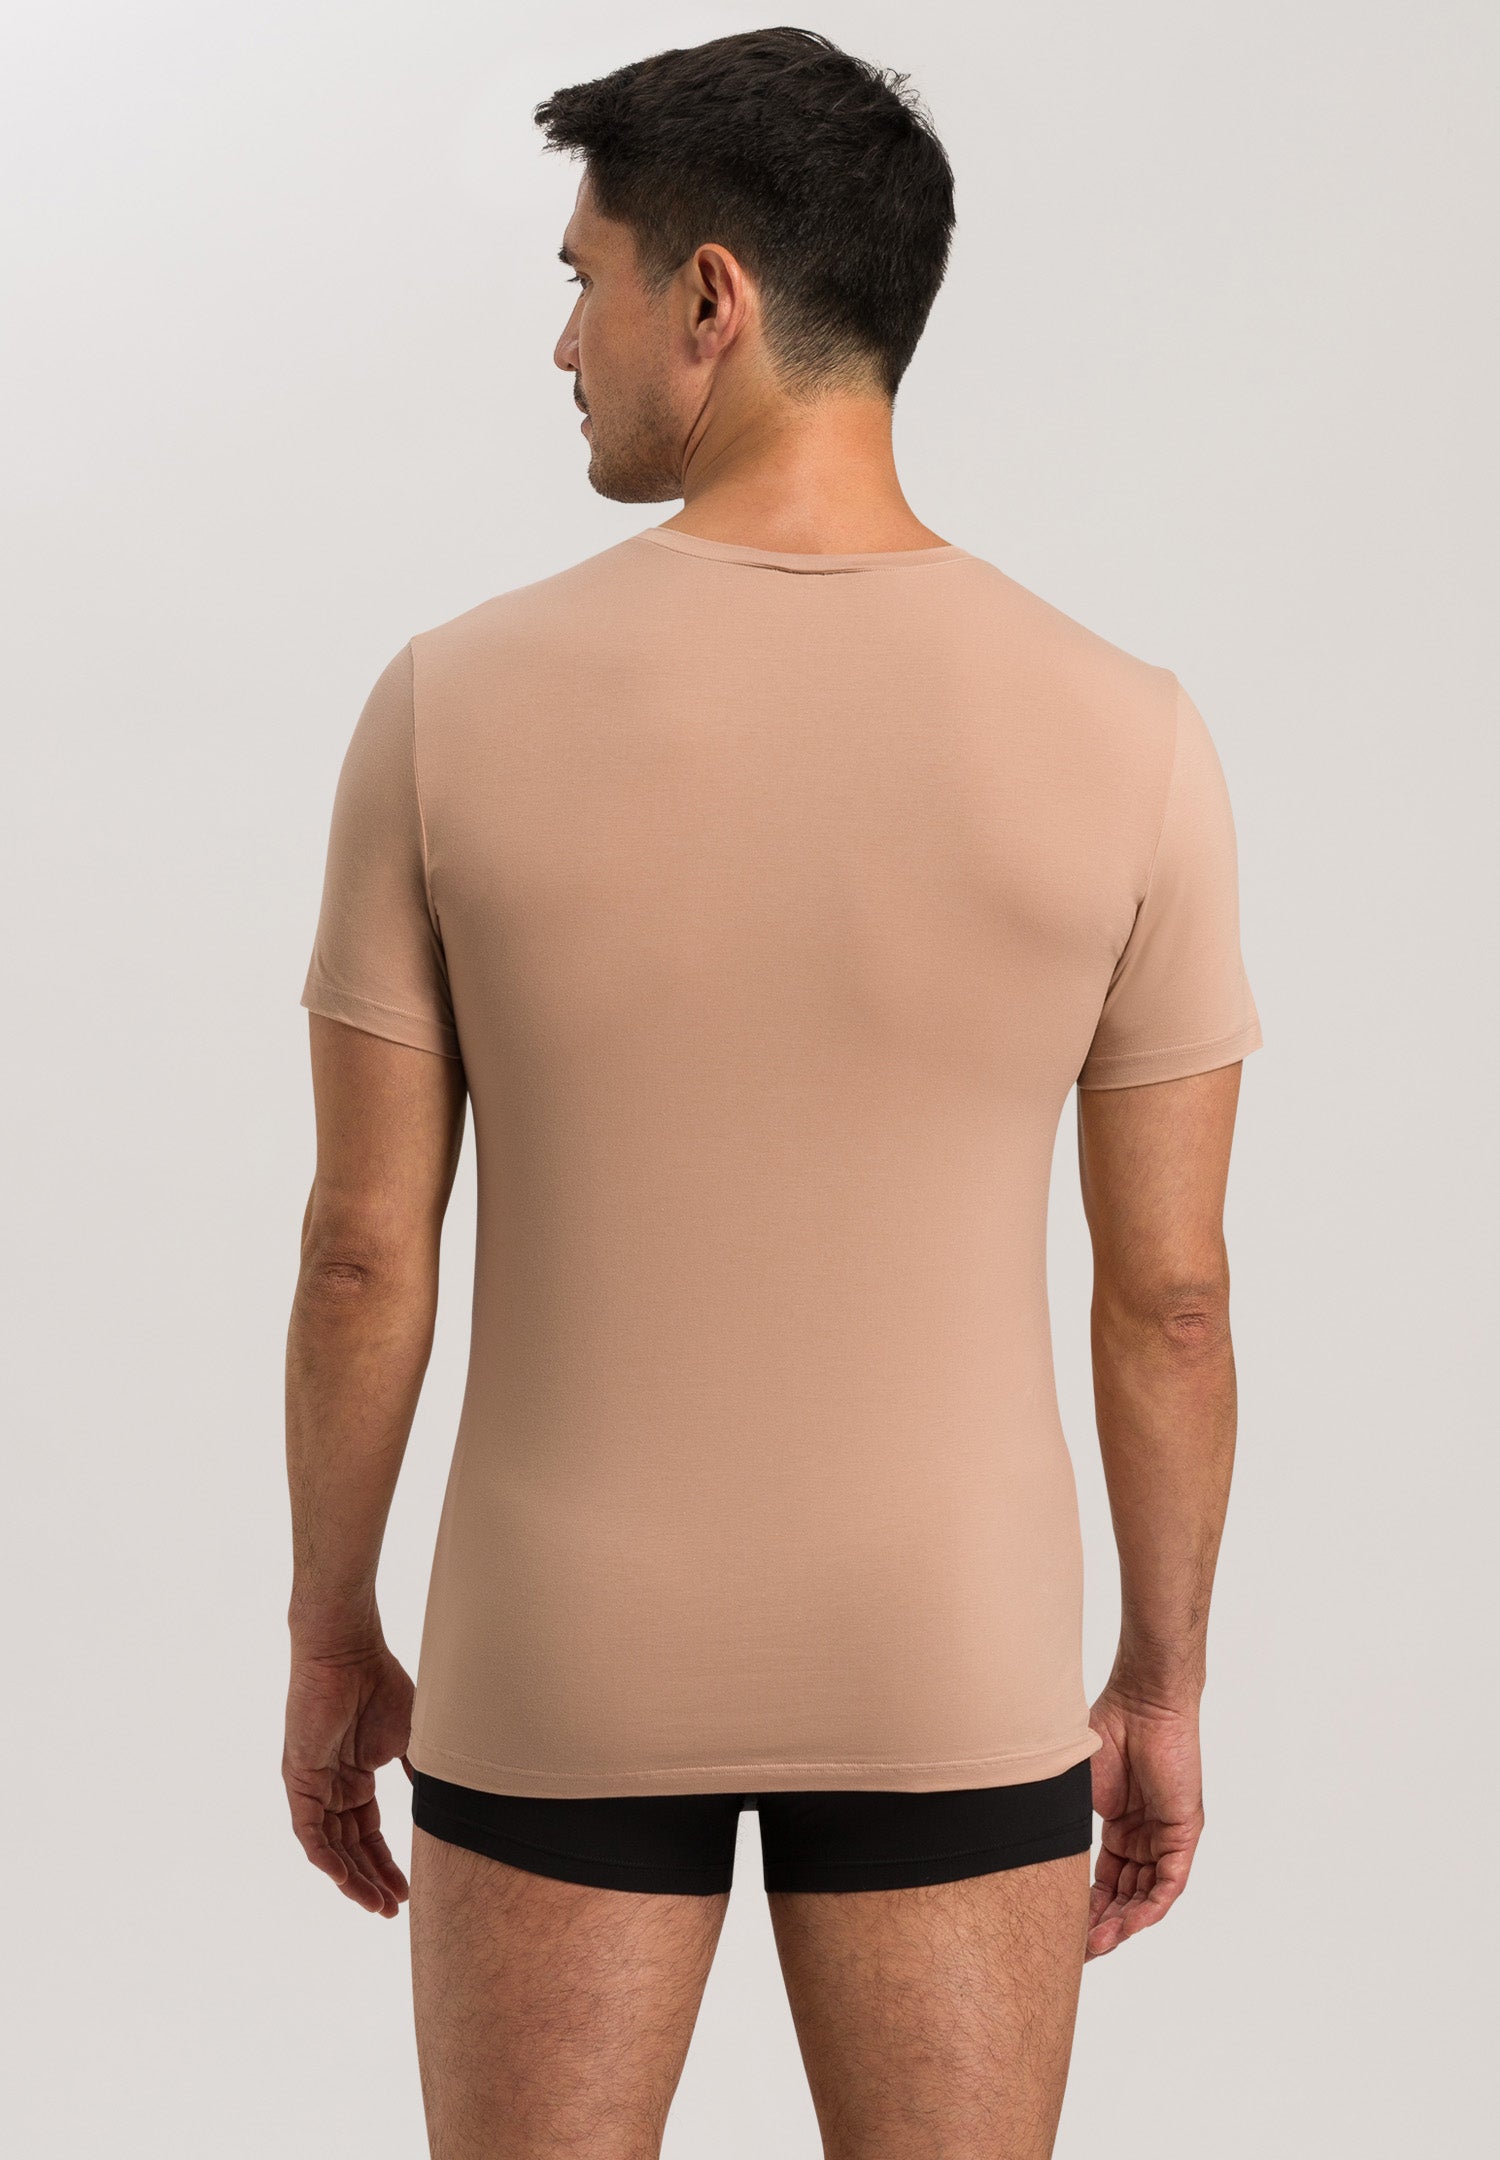 73089 Cotton Superior V-Neck Shirt - 1216 Neutral